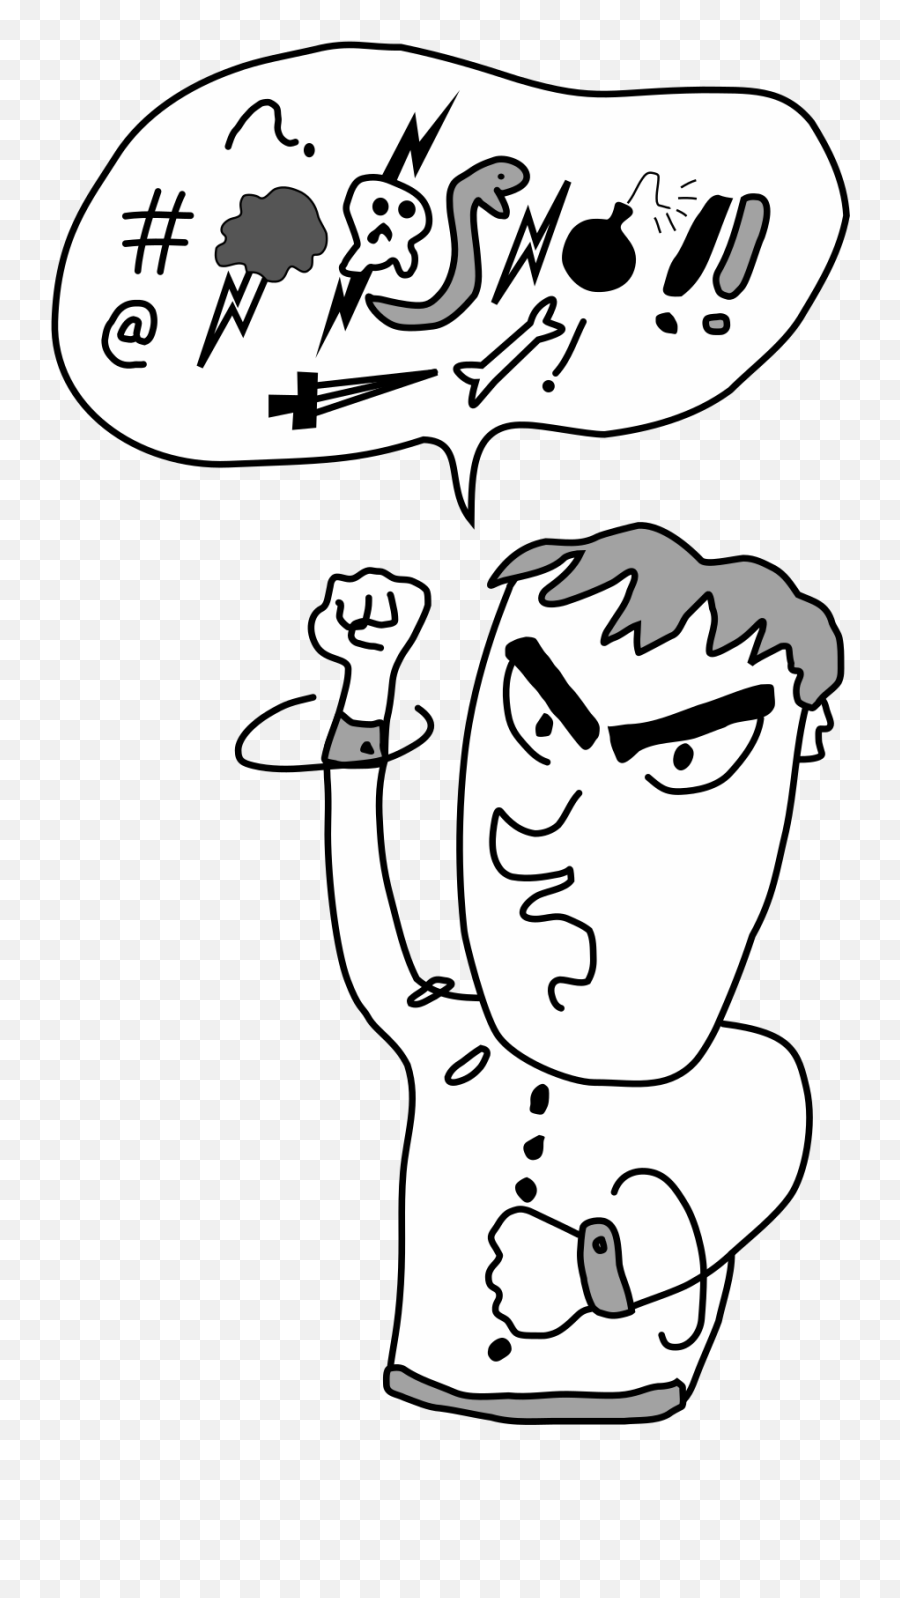 Profanity - Wikipedia Cartoon Saying Bad Words Emoji,Cursed Emoji Hand